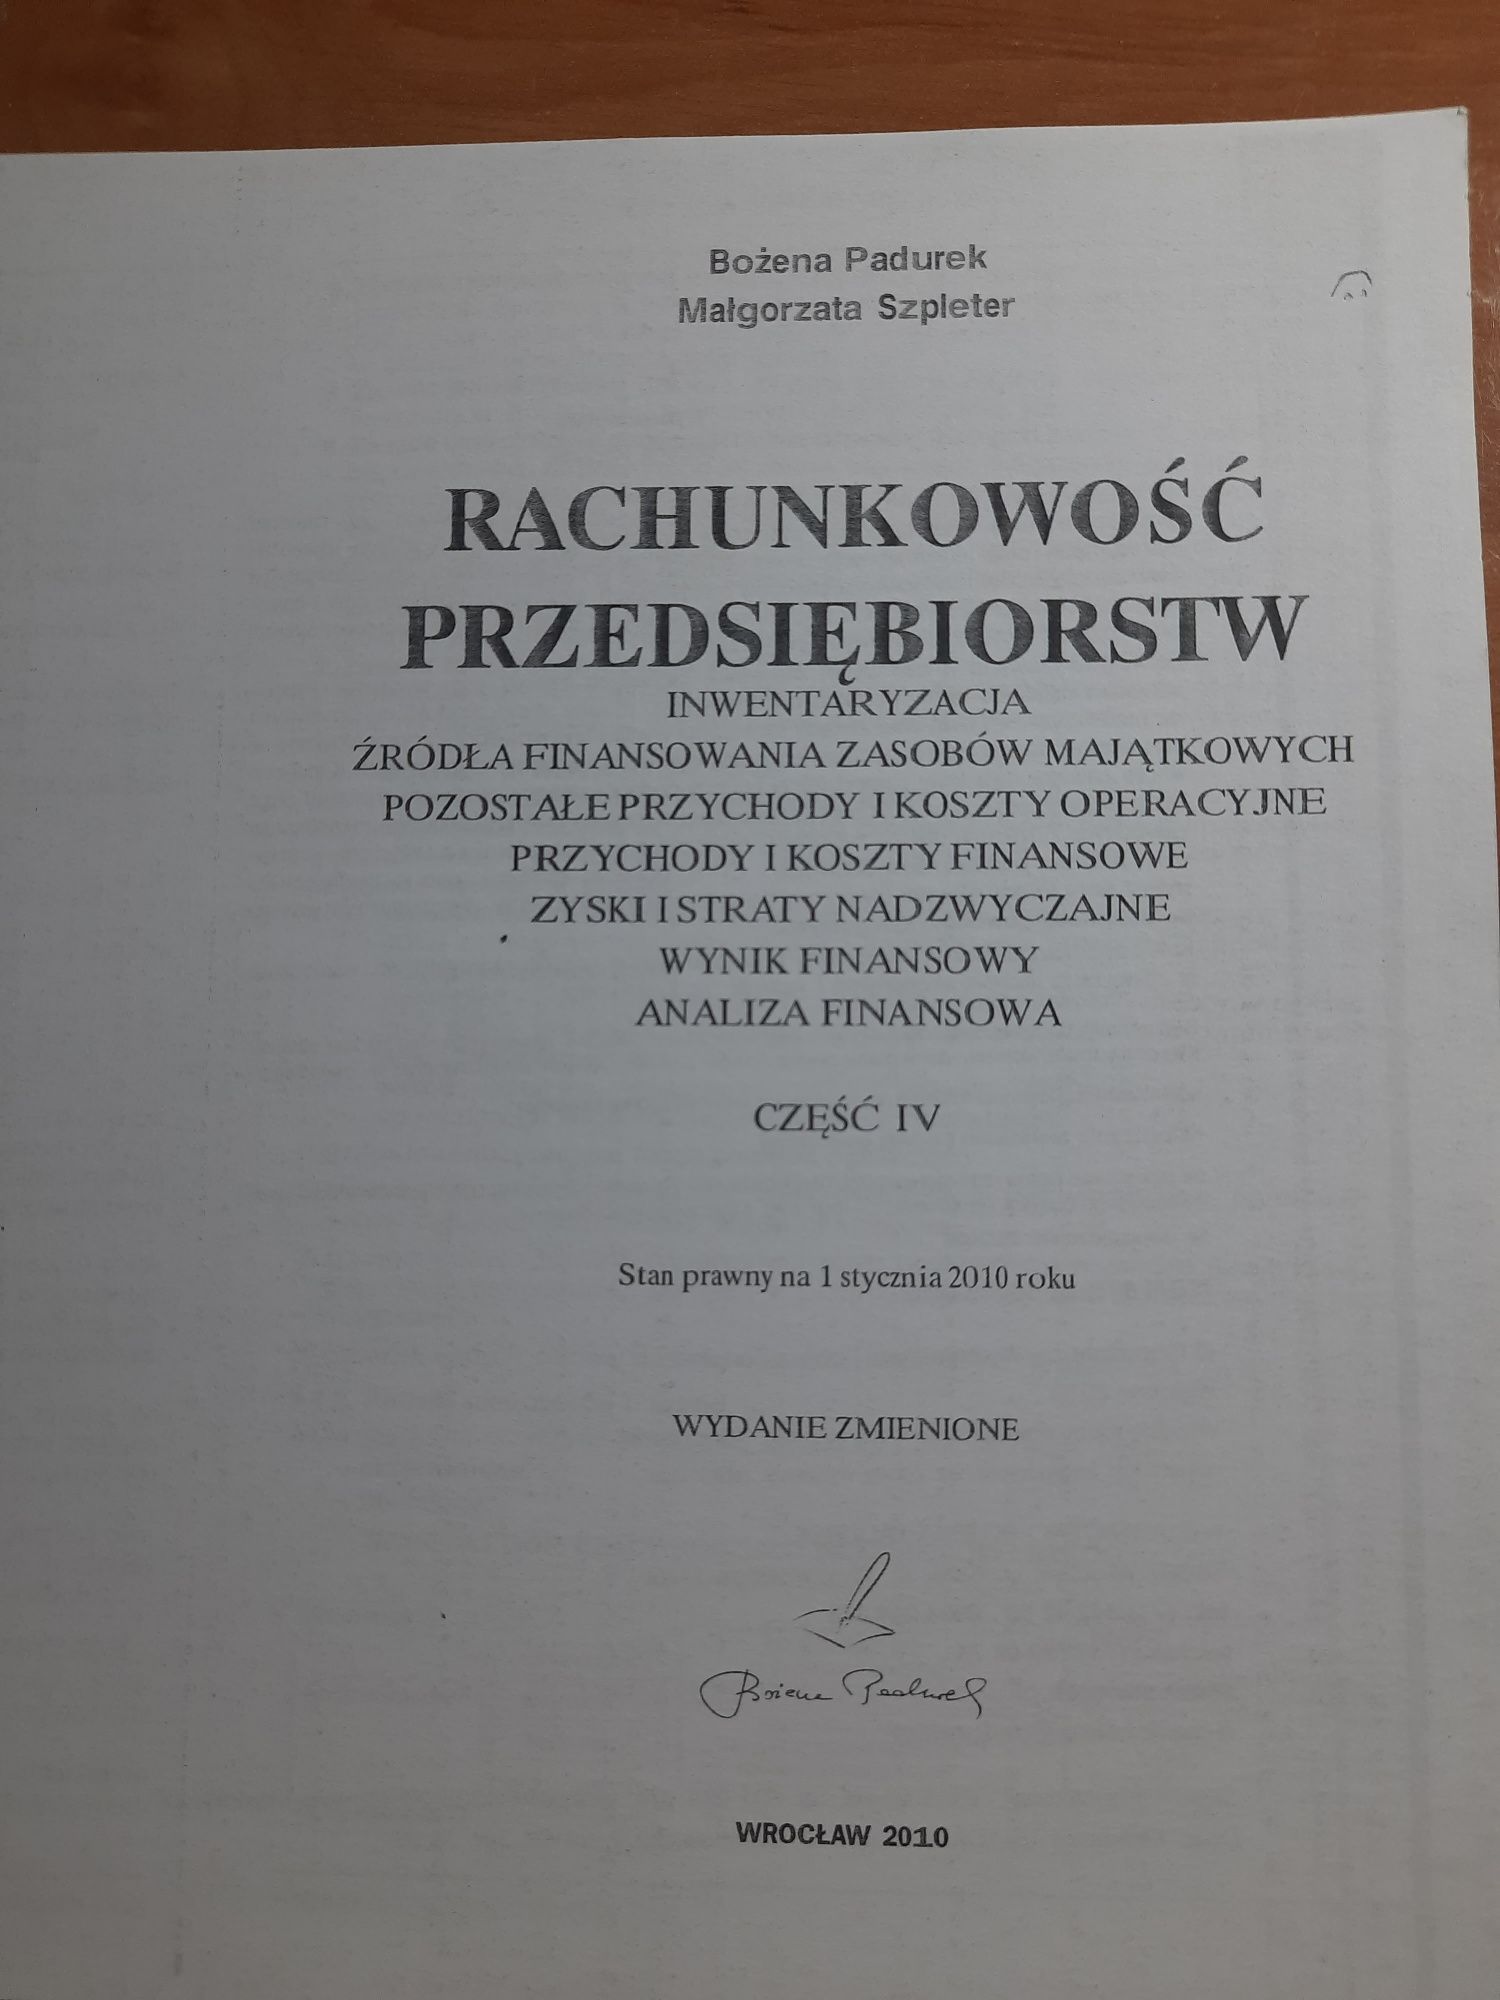 B. Padurek, M Szpleter, "Rachunkowość przedsiębiorstw, cz. III i IV"